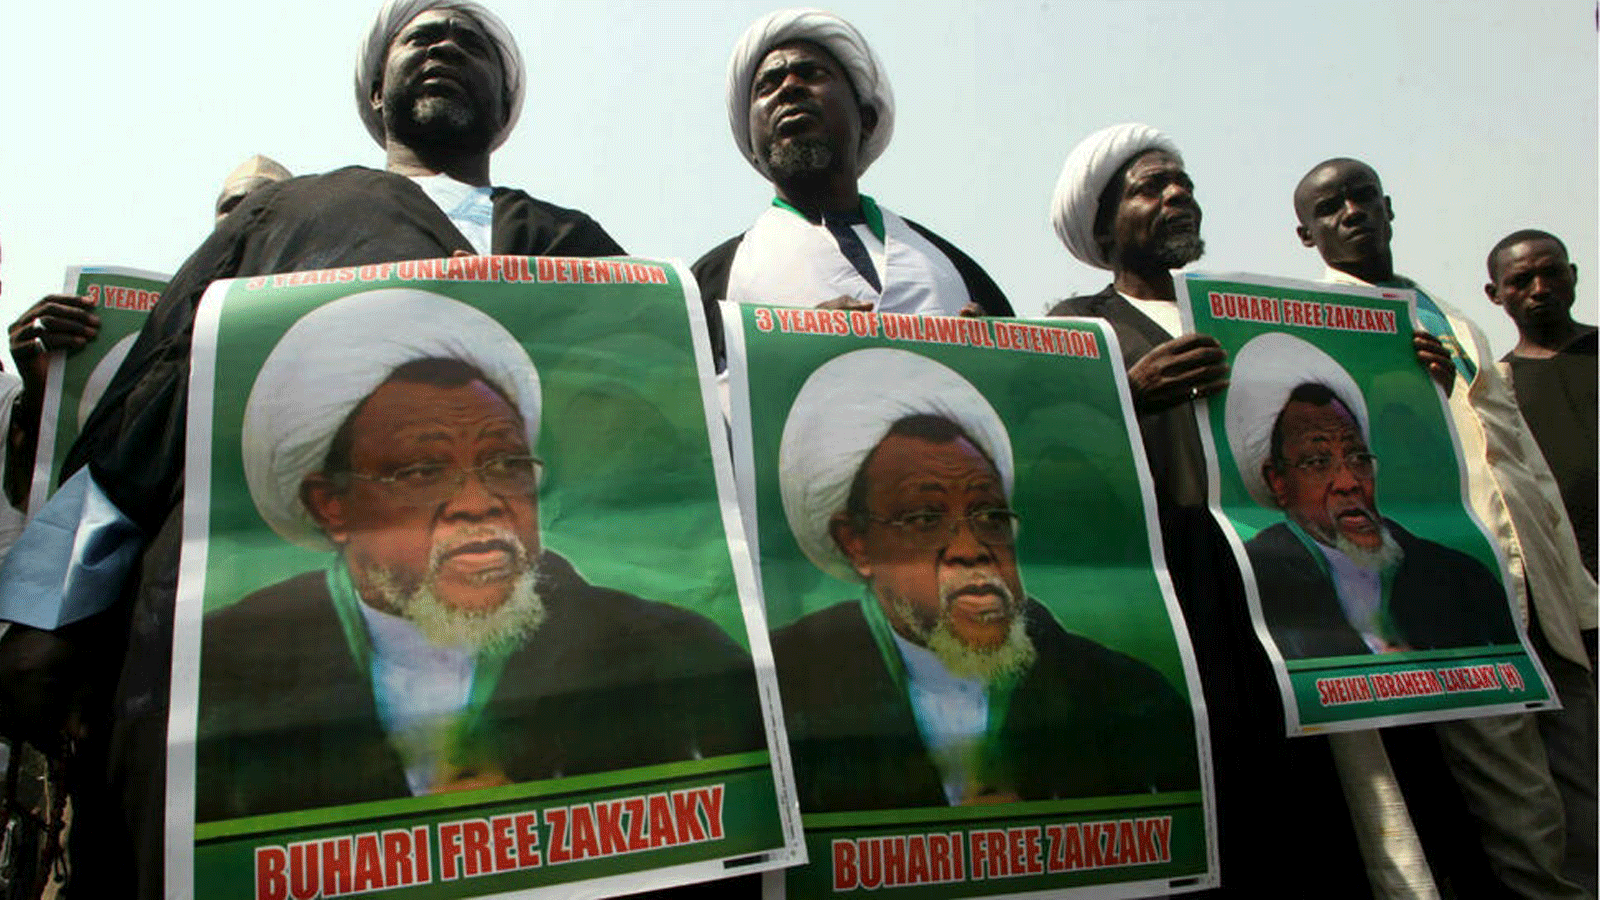 أعضاء الحركة الإسلامية في نيجيريا يحتجون على اعتقال زعيمهم إبراهيم زكزكي في أبوجا في 22 يناير 2019.